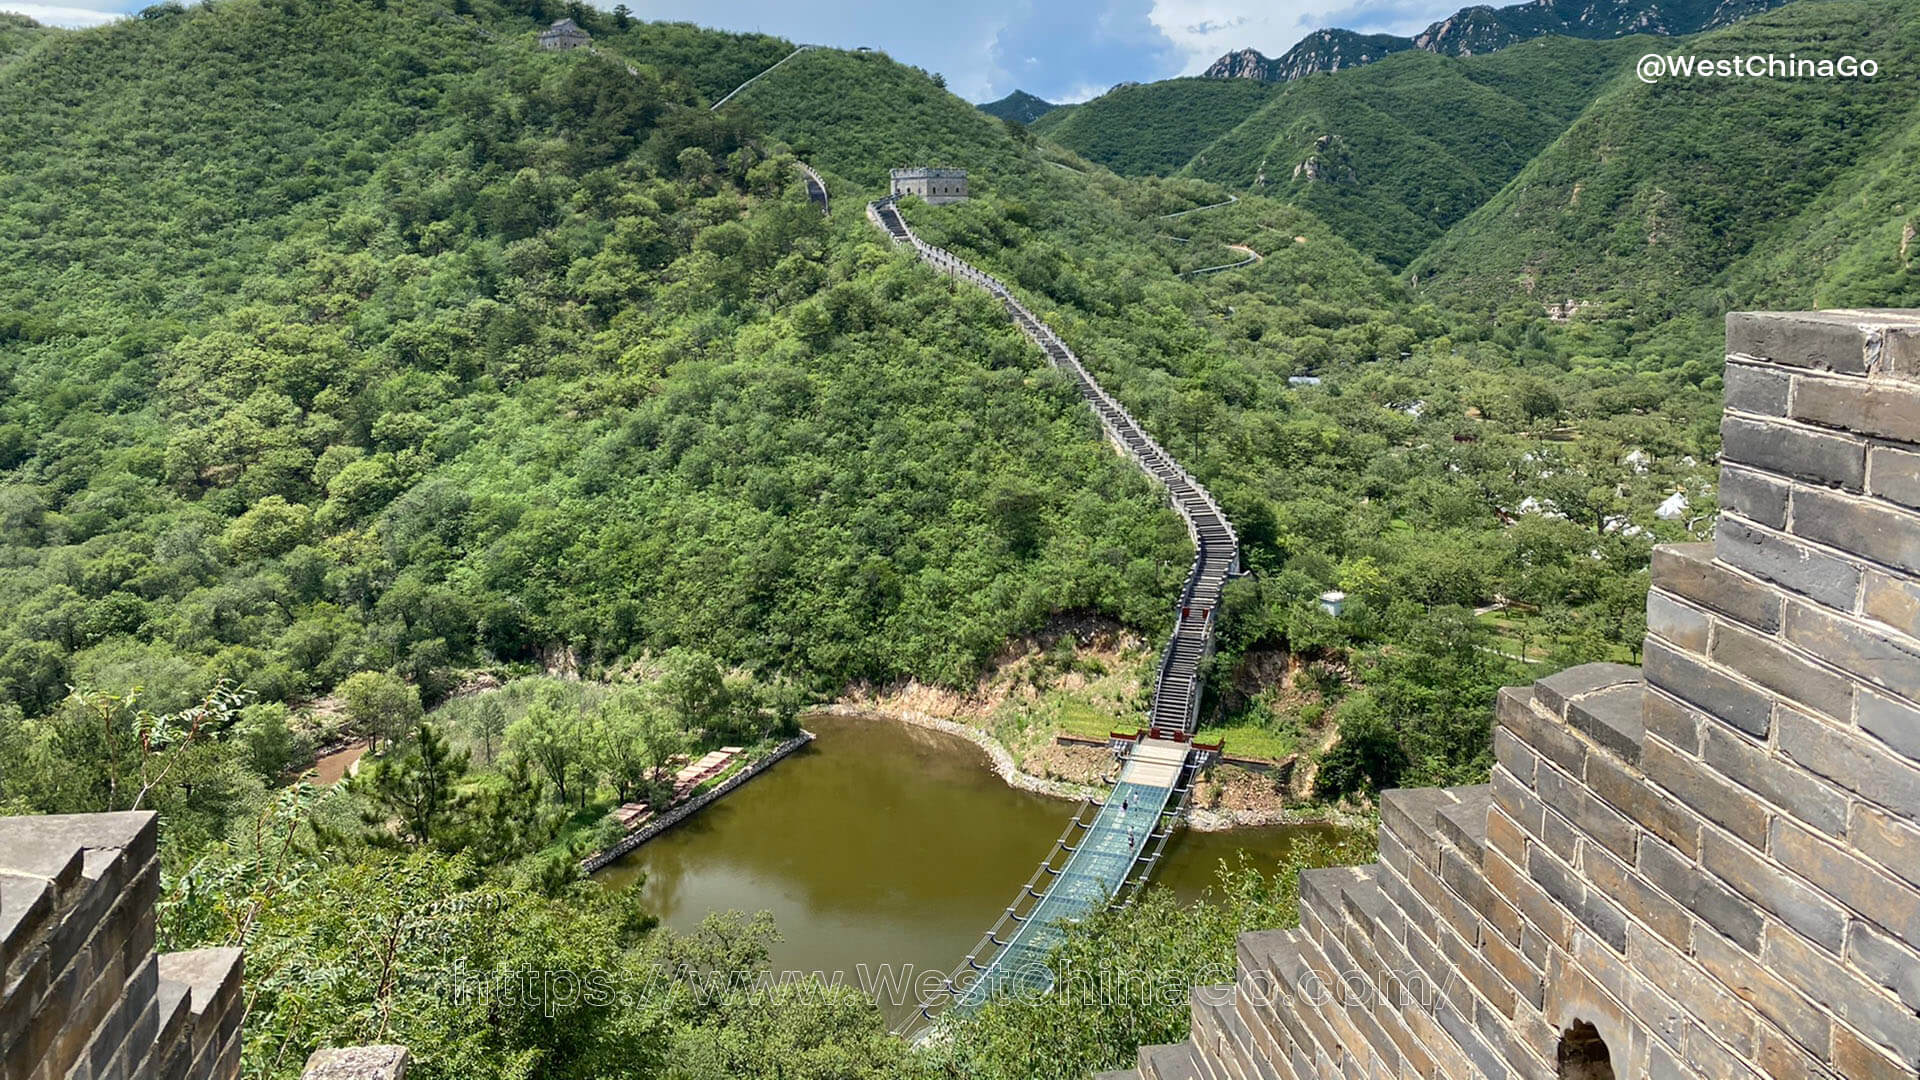 Huanghuacheng Lakeside Great Wall